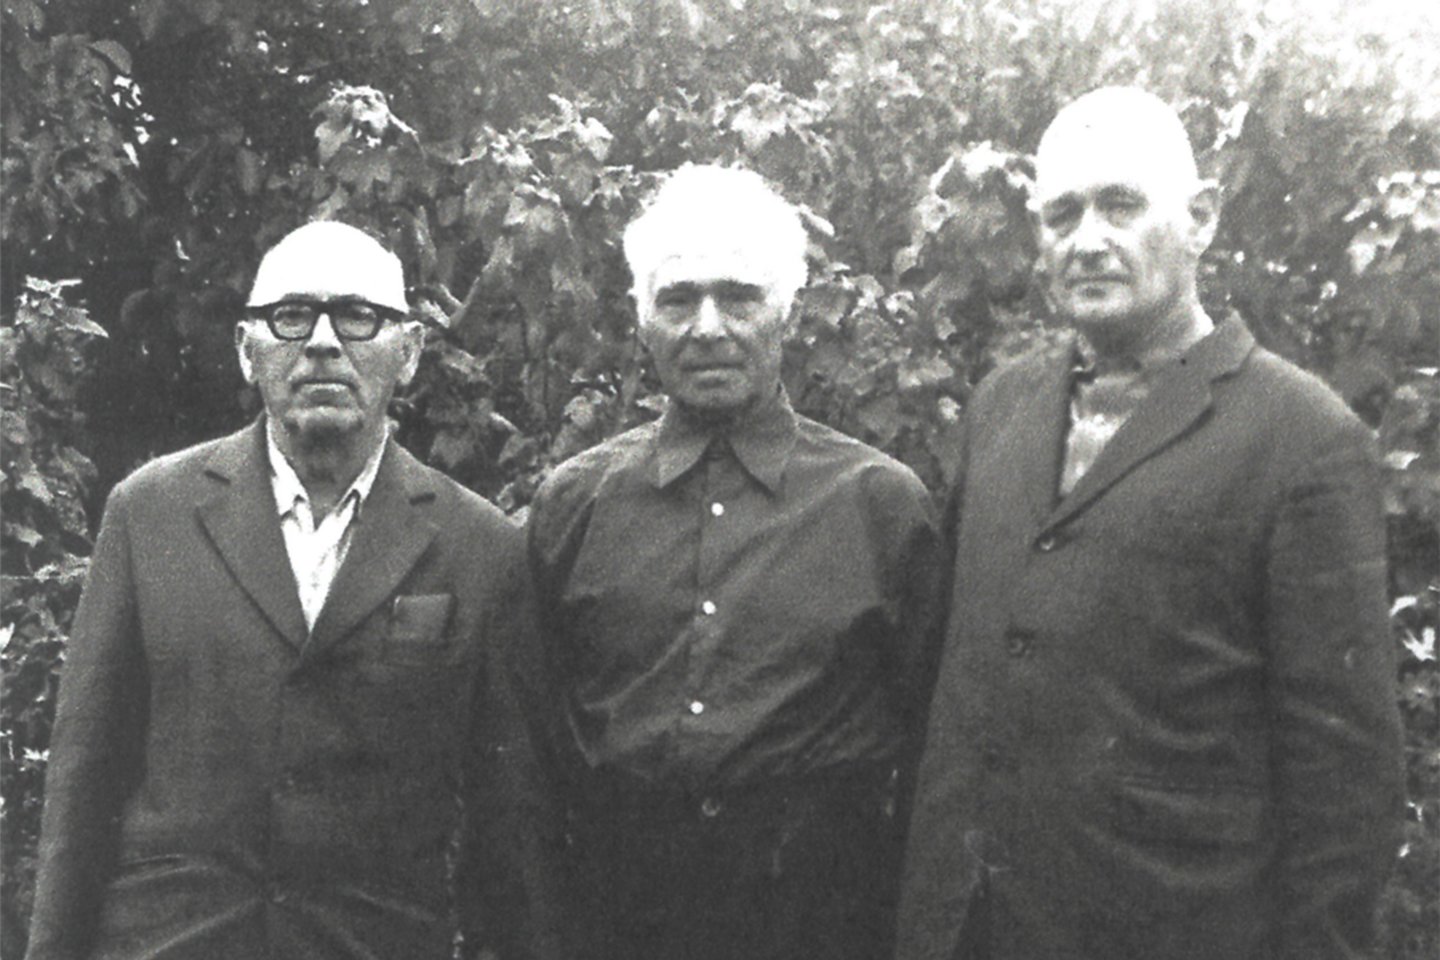 Išgelbėtasis A.Fridmanas (kairėje), Pasaulio tautų teisuolis J.Steponavičius (viduryje) ir išgelbėtasis Z.Chaimas.